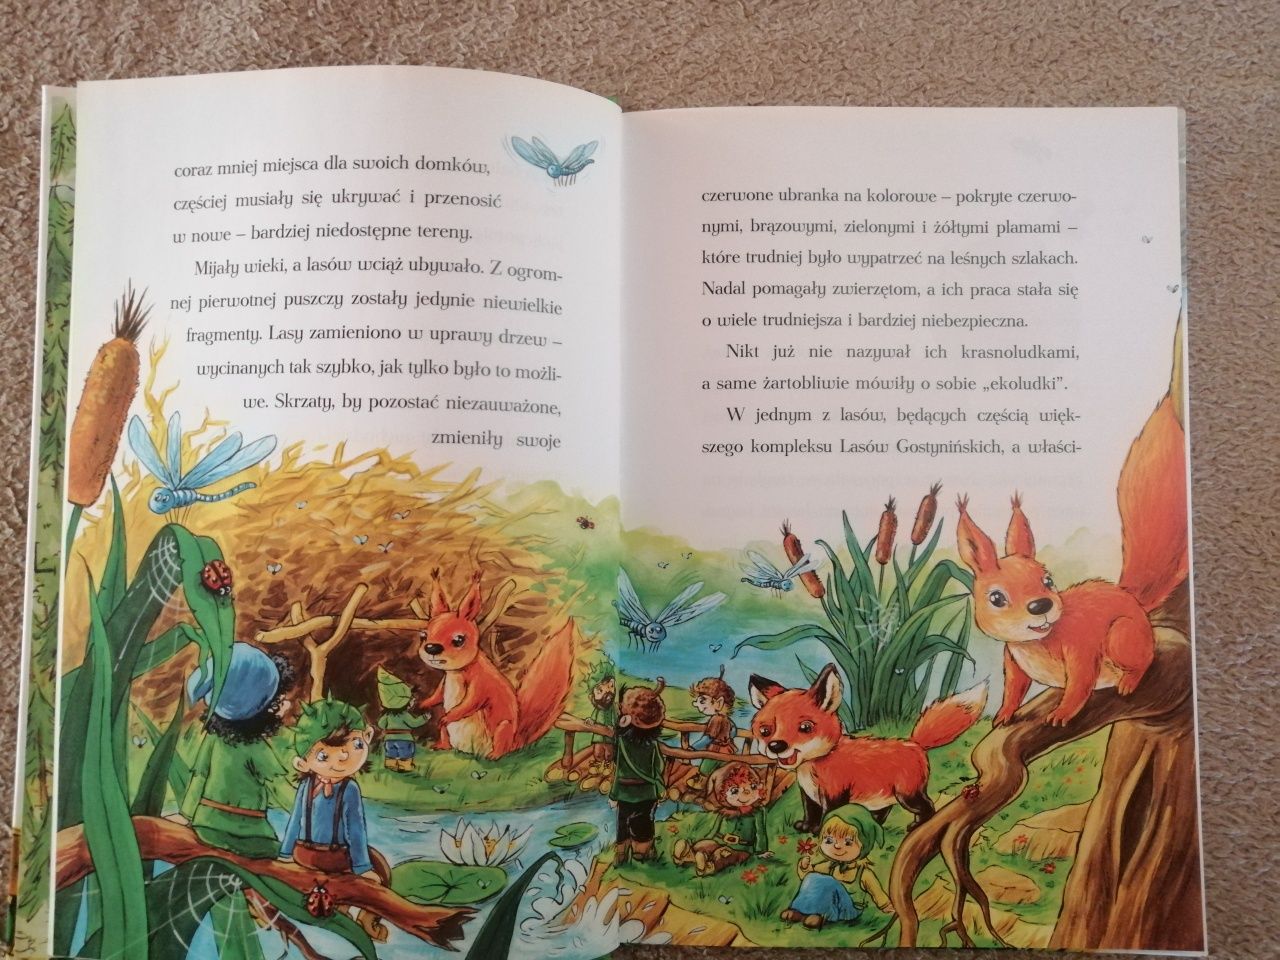 Książka "Przygody leśnych skrzatów" Nudzimisie